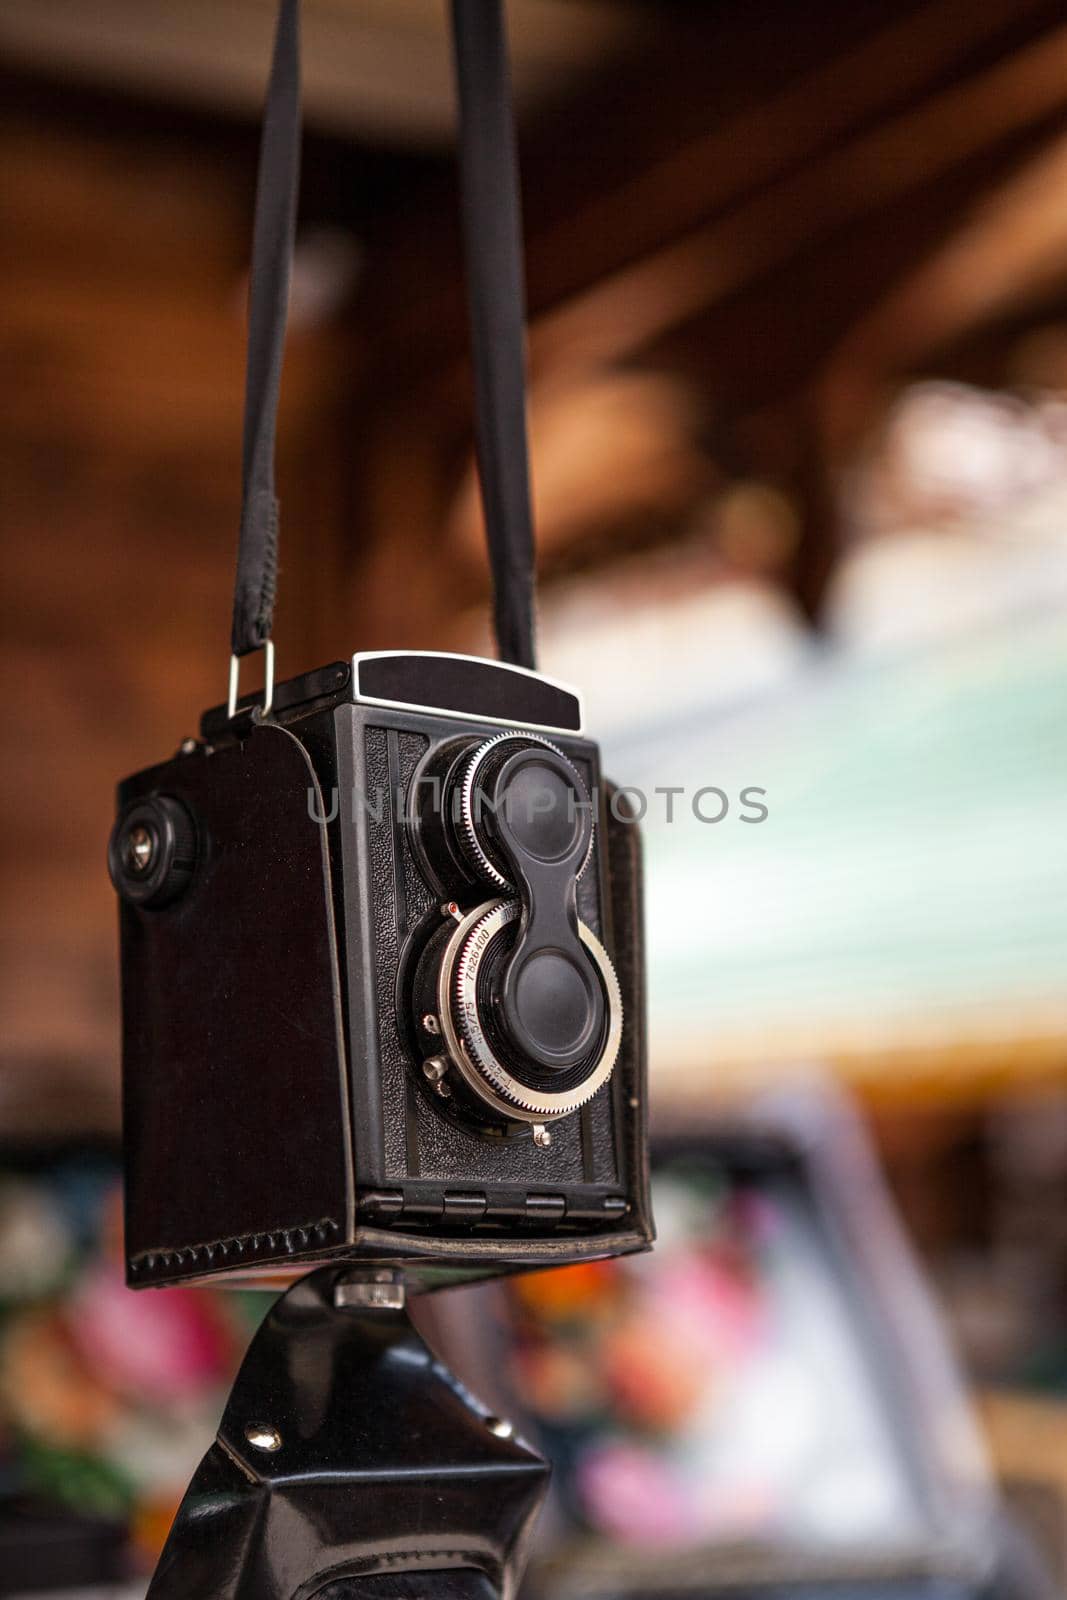 The old Soviet medium format film camera hanging on a belt at a flea market